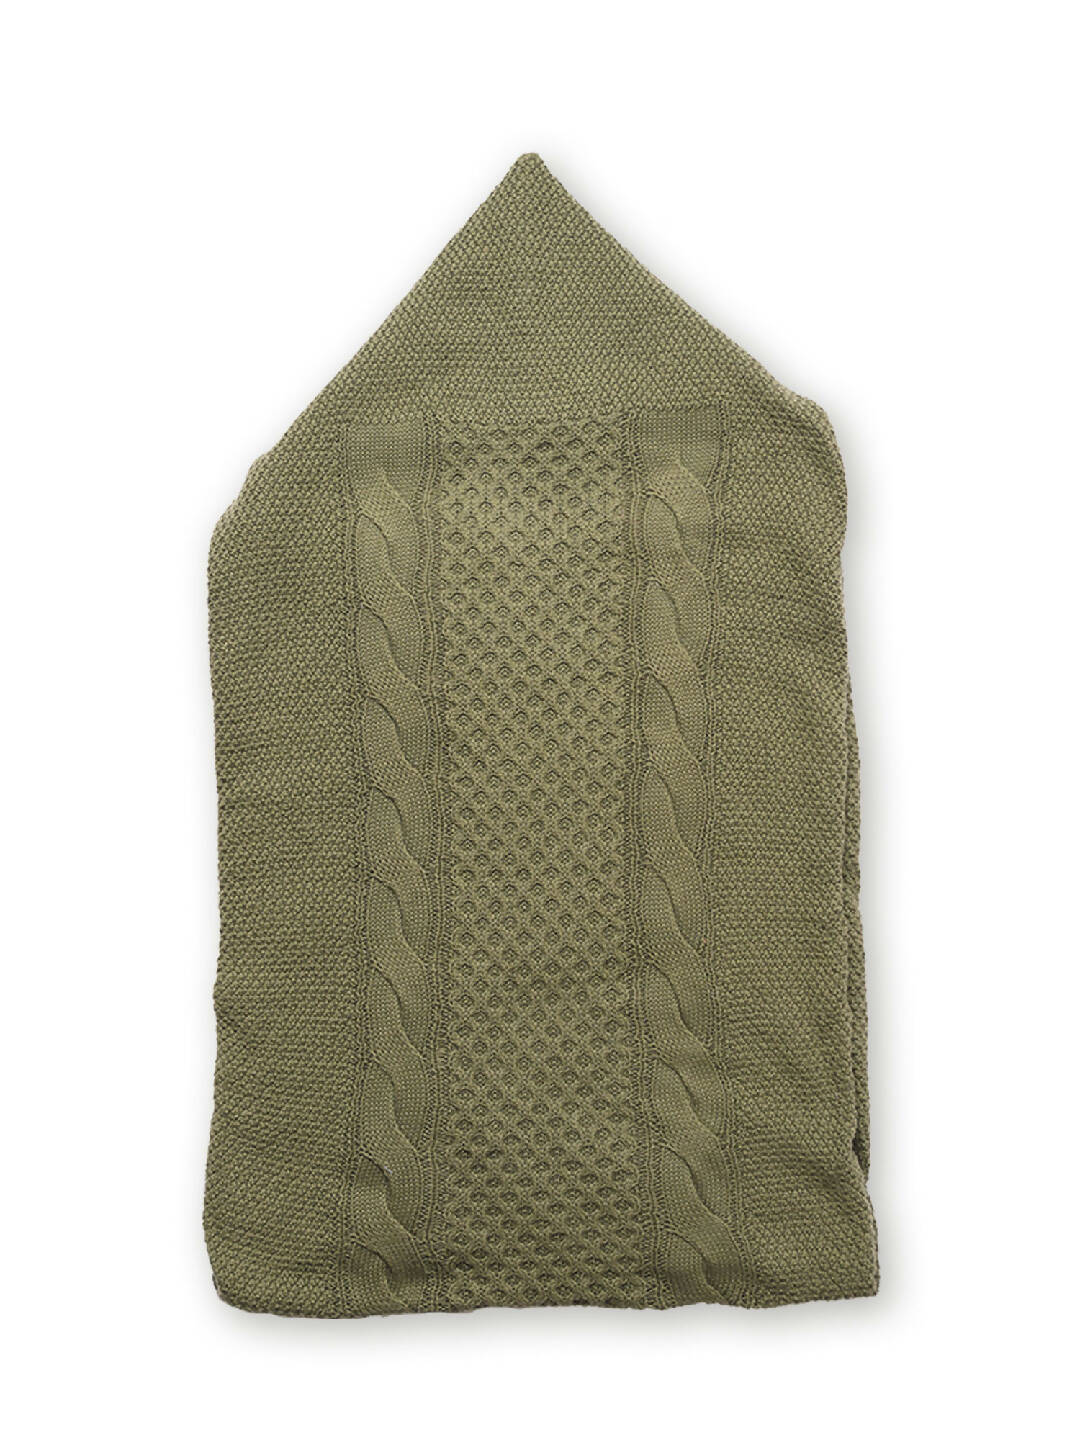 Wintergreen Cocoon Baby Blanket (2)